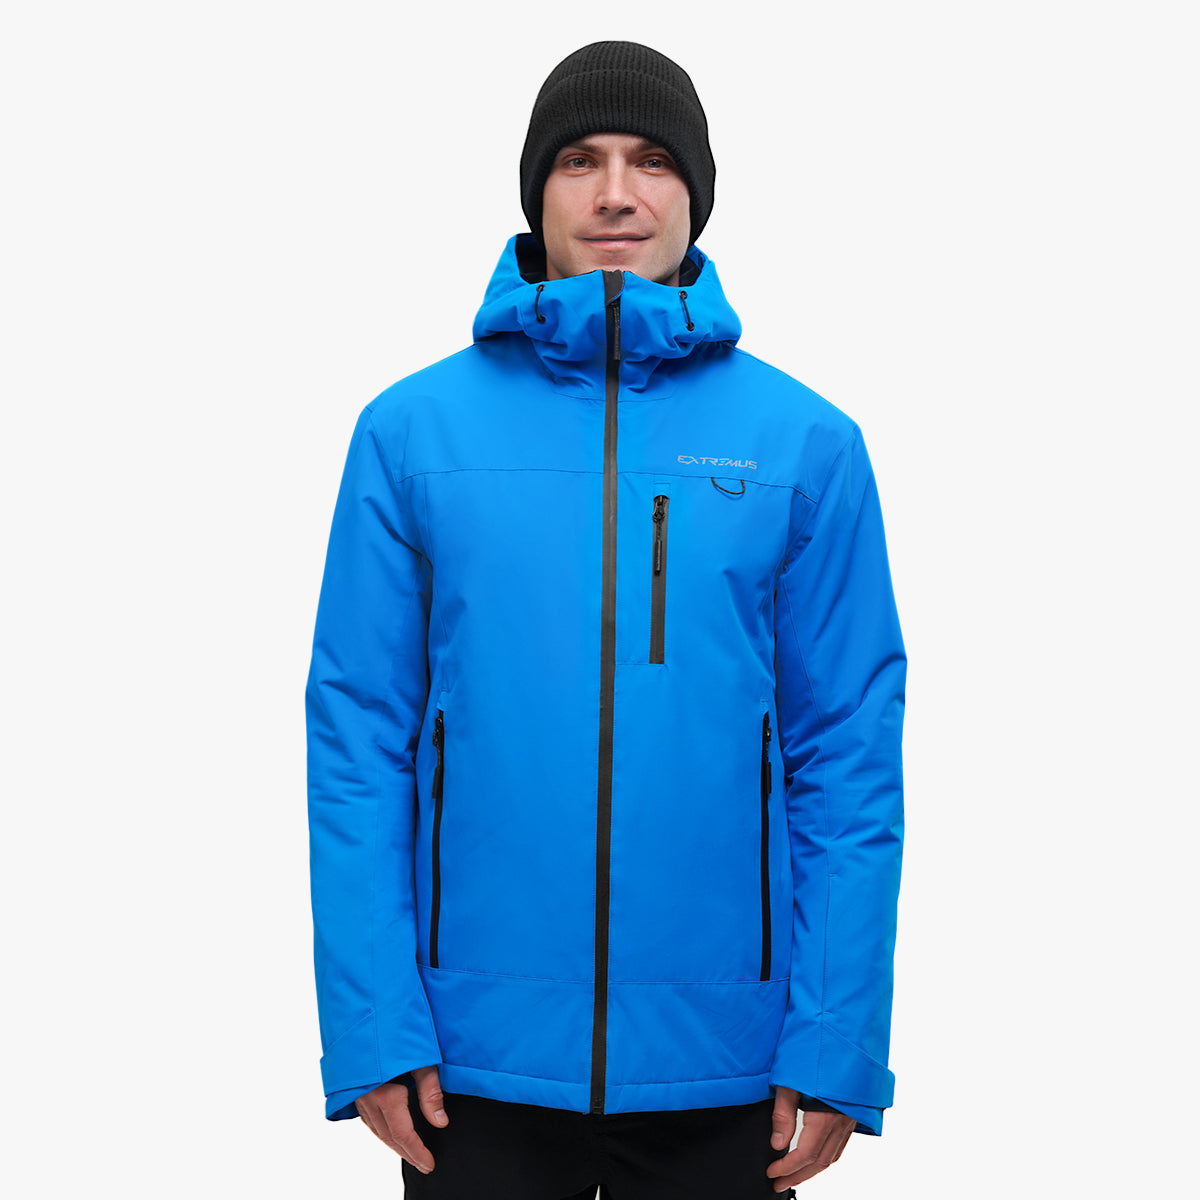 Extremus Waterproof Winter Coat with Adjustable Hood